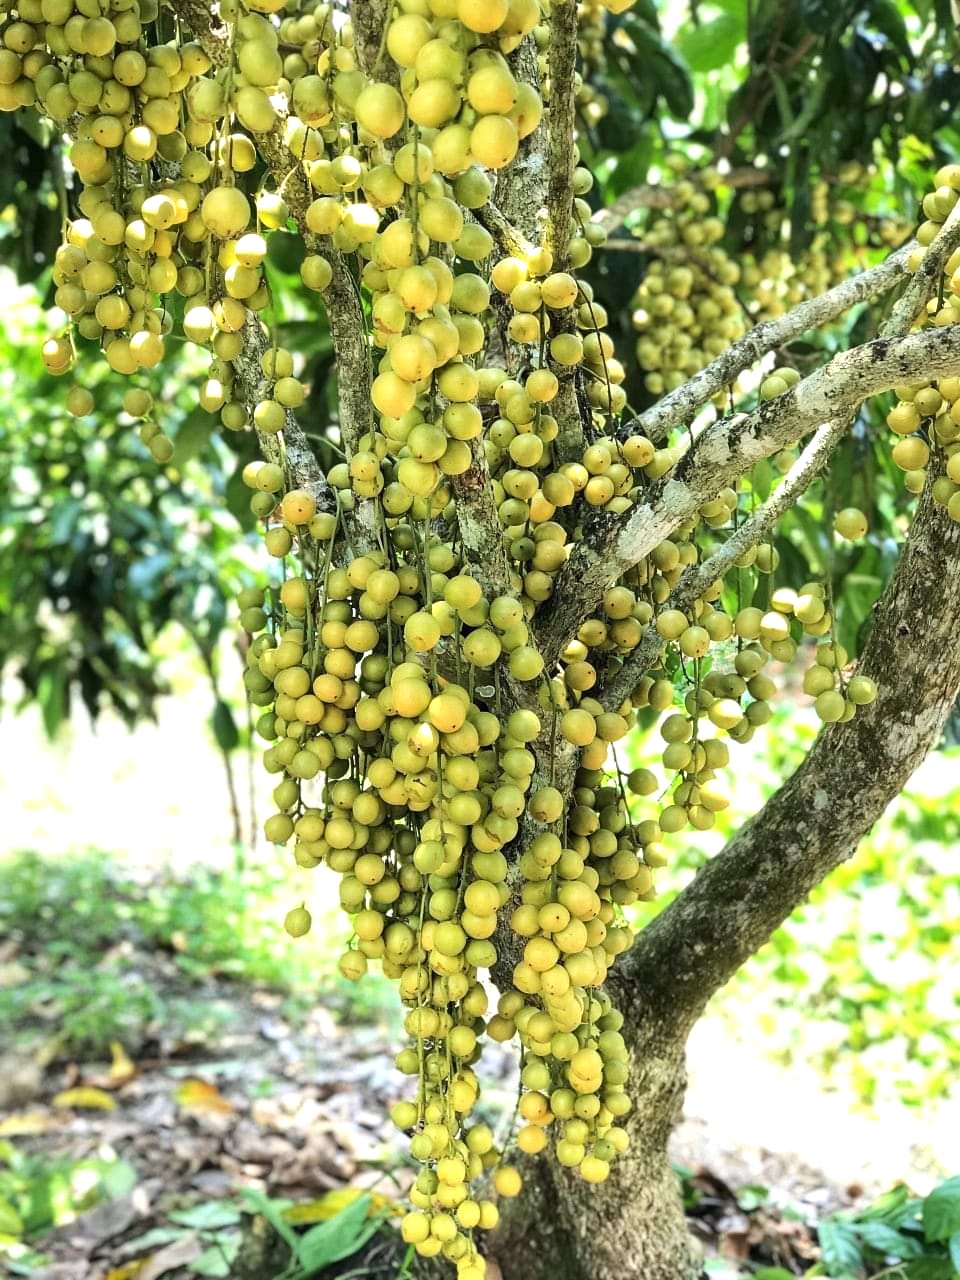 Mê mẩn những vườn dâu trĩu quả ở Kiên Giang - Ảnh 2.